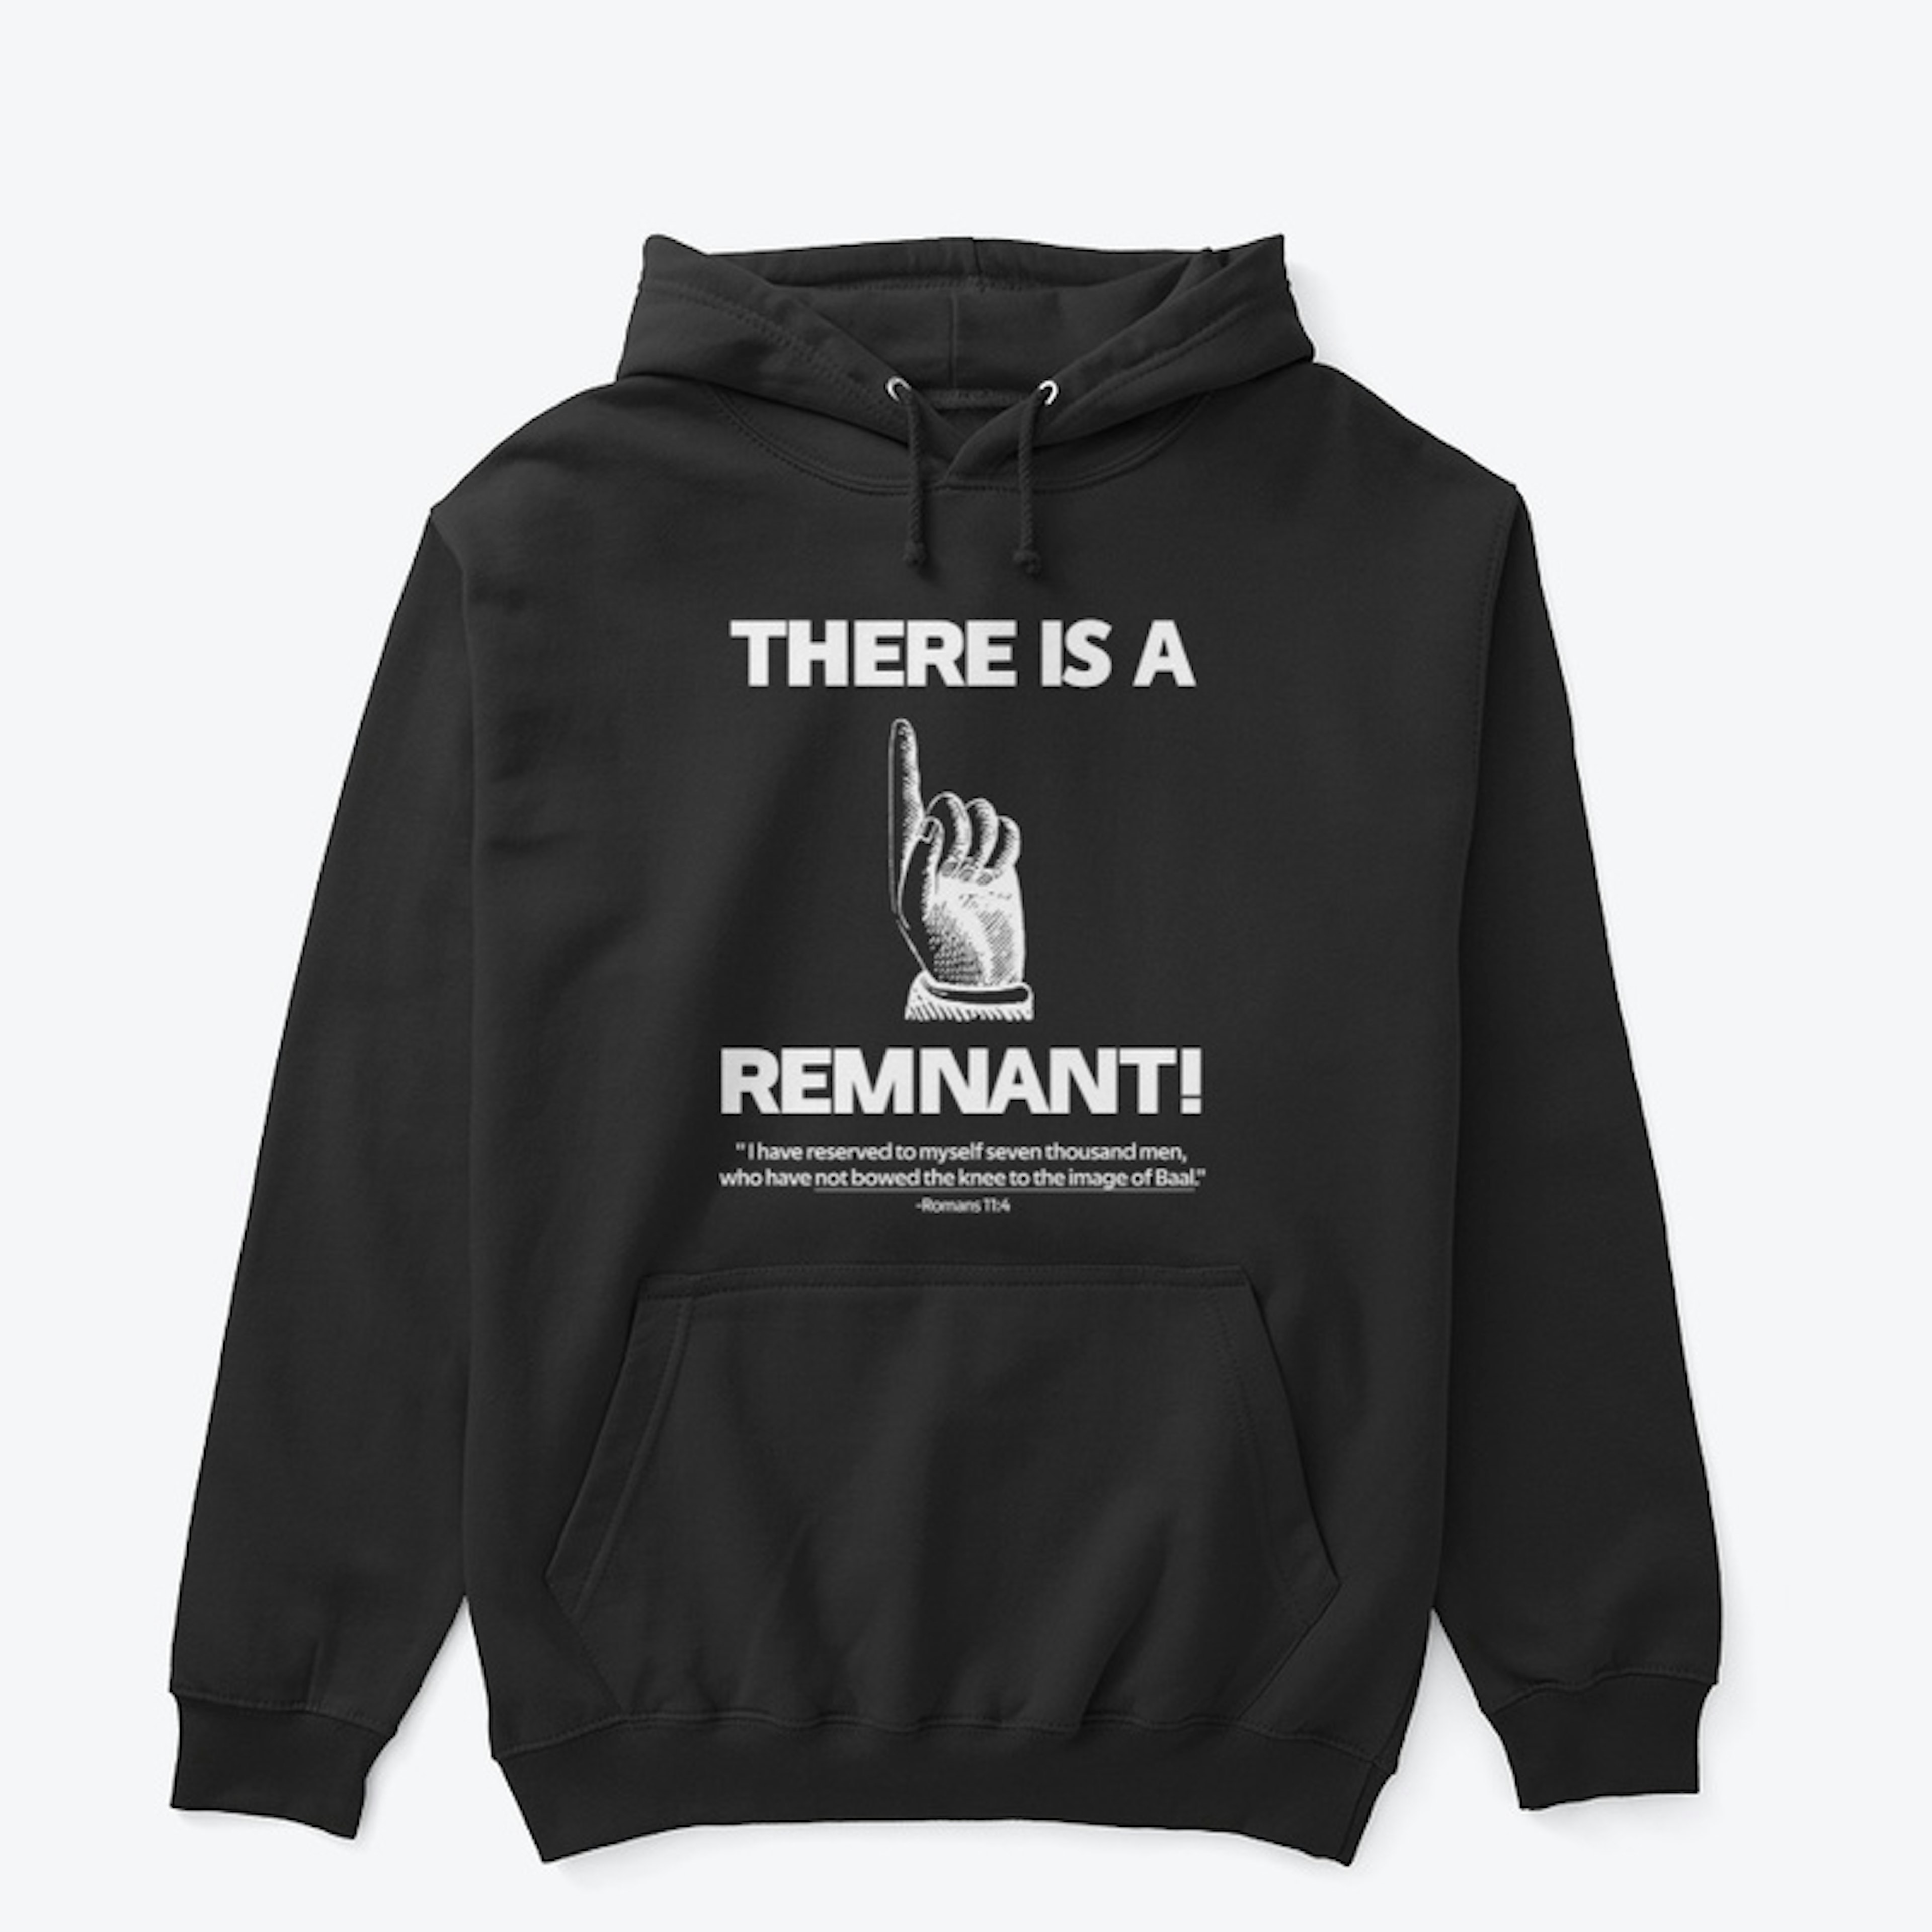 Remnant!